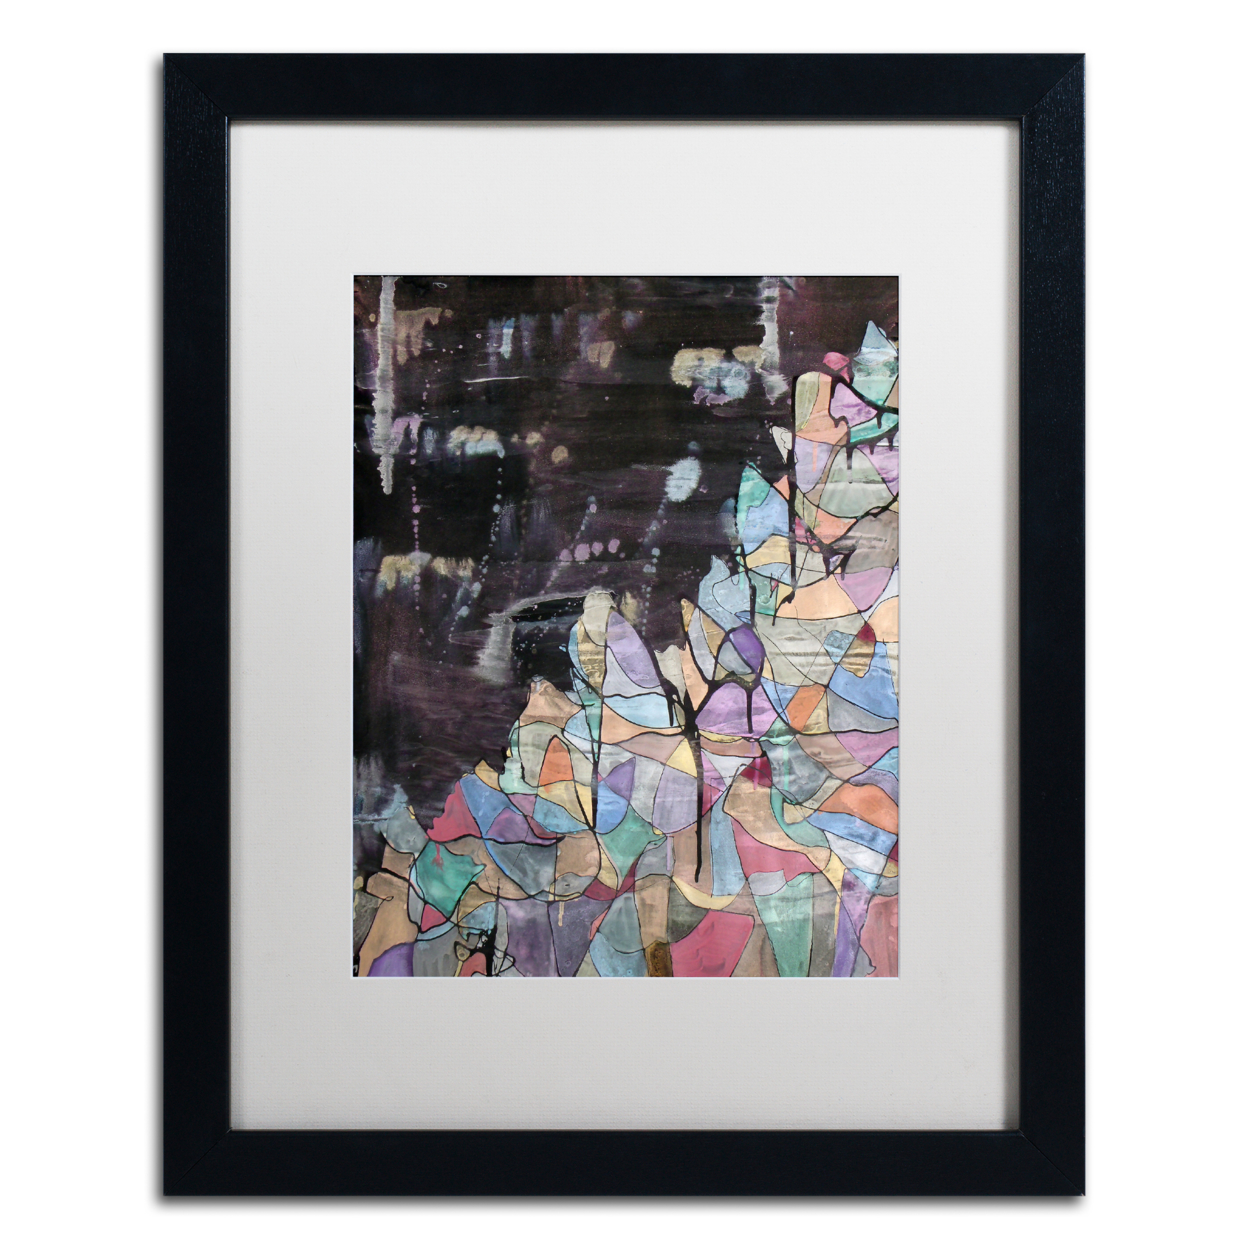 Lauren Moss 'Shiveluch' Black Wooden Framed Art 18 X 22 Inches